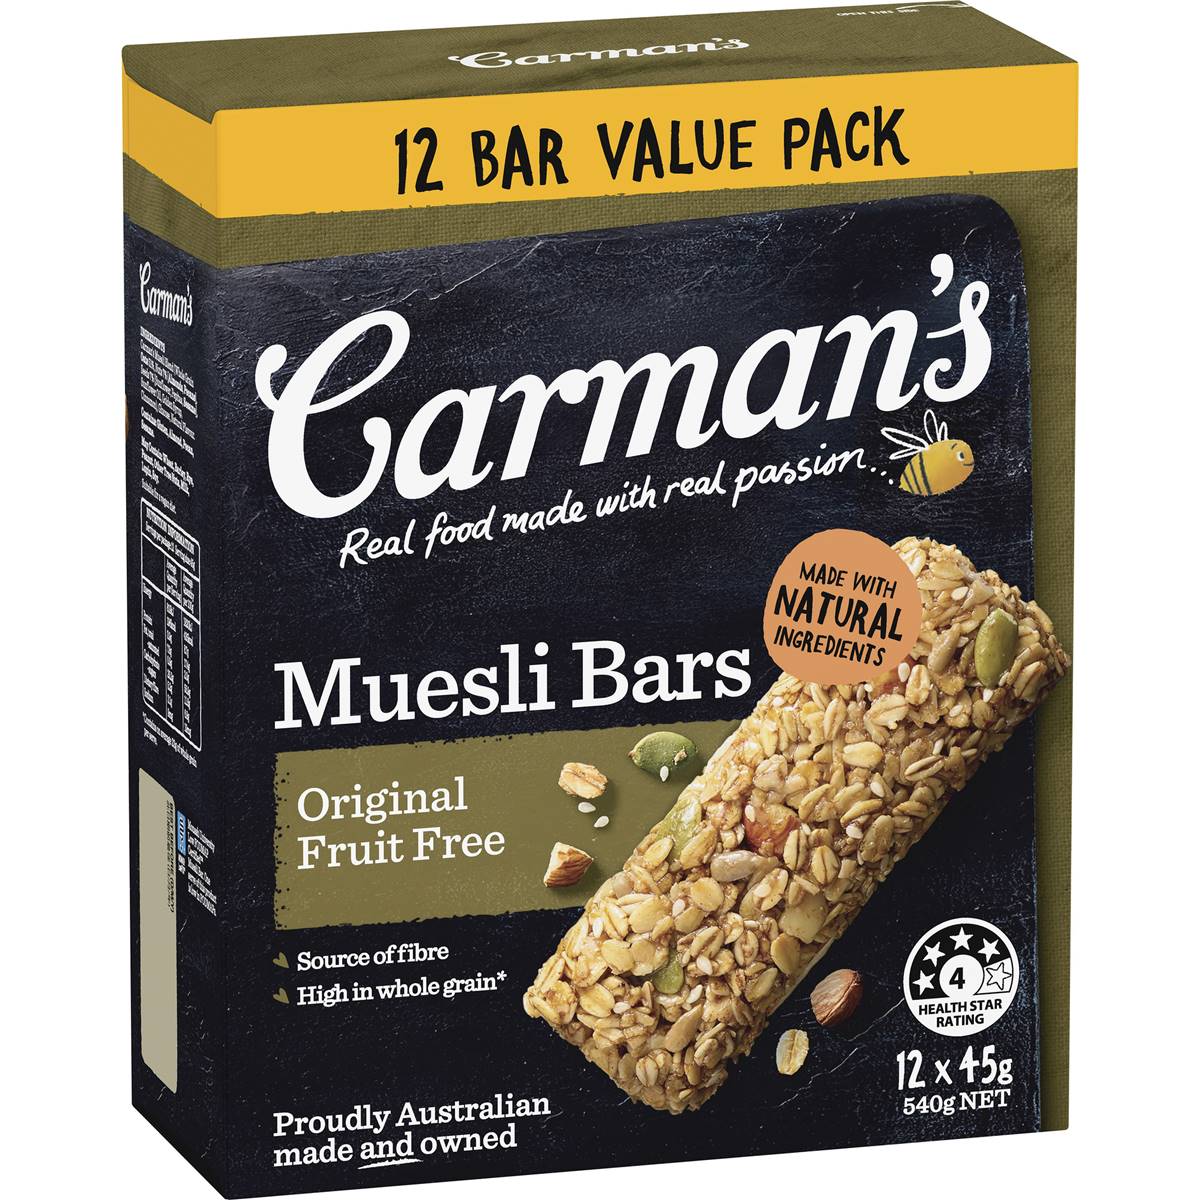 Calories in Carman's Muesli Bars Original Fruits Free